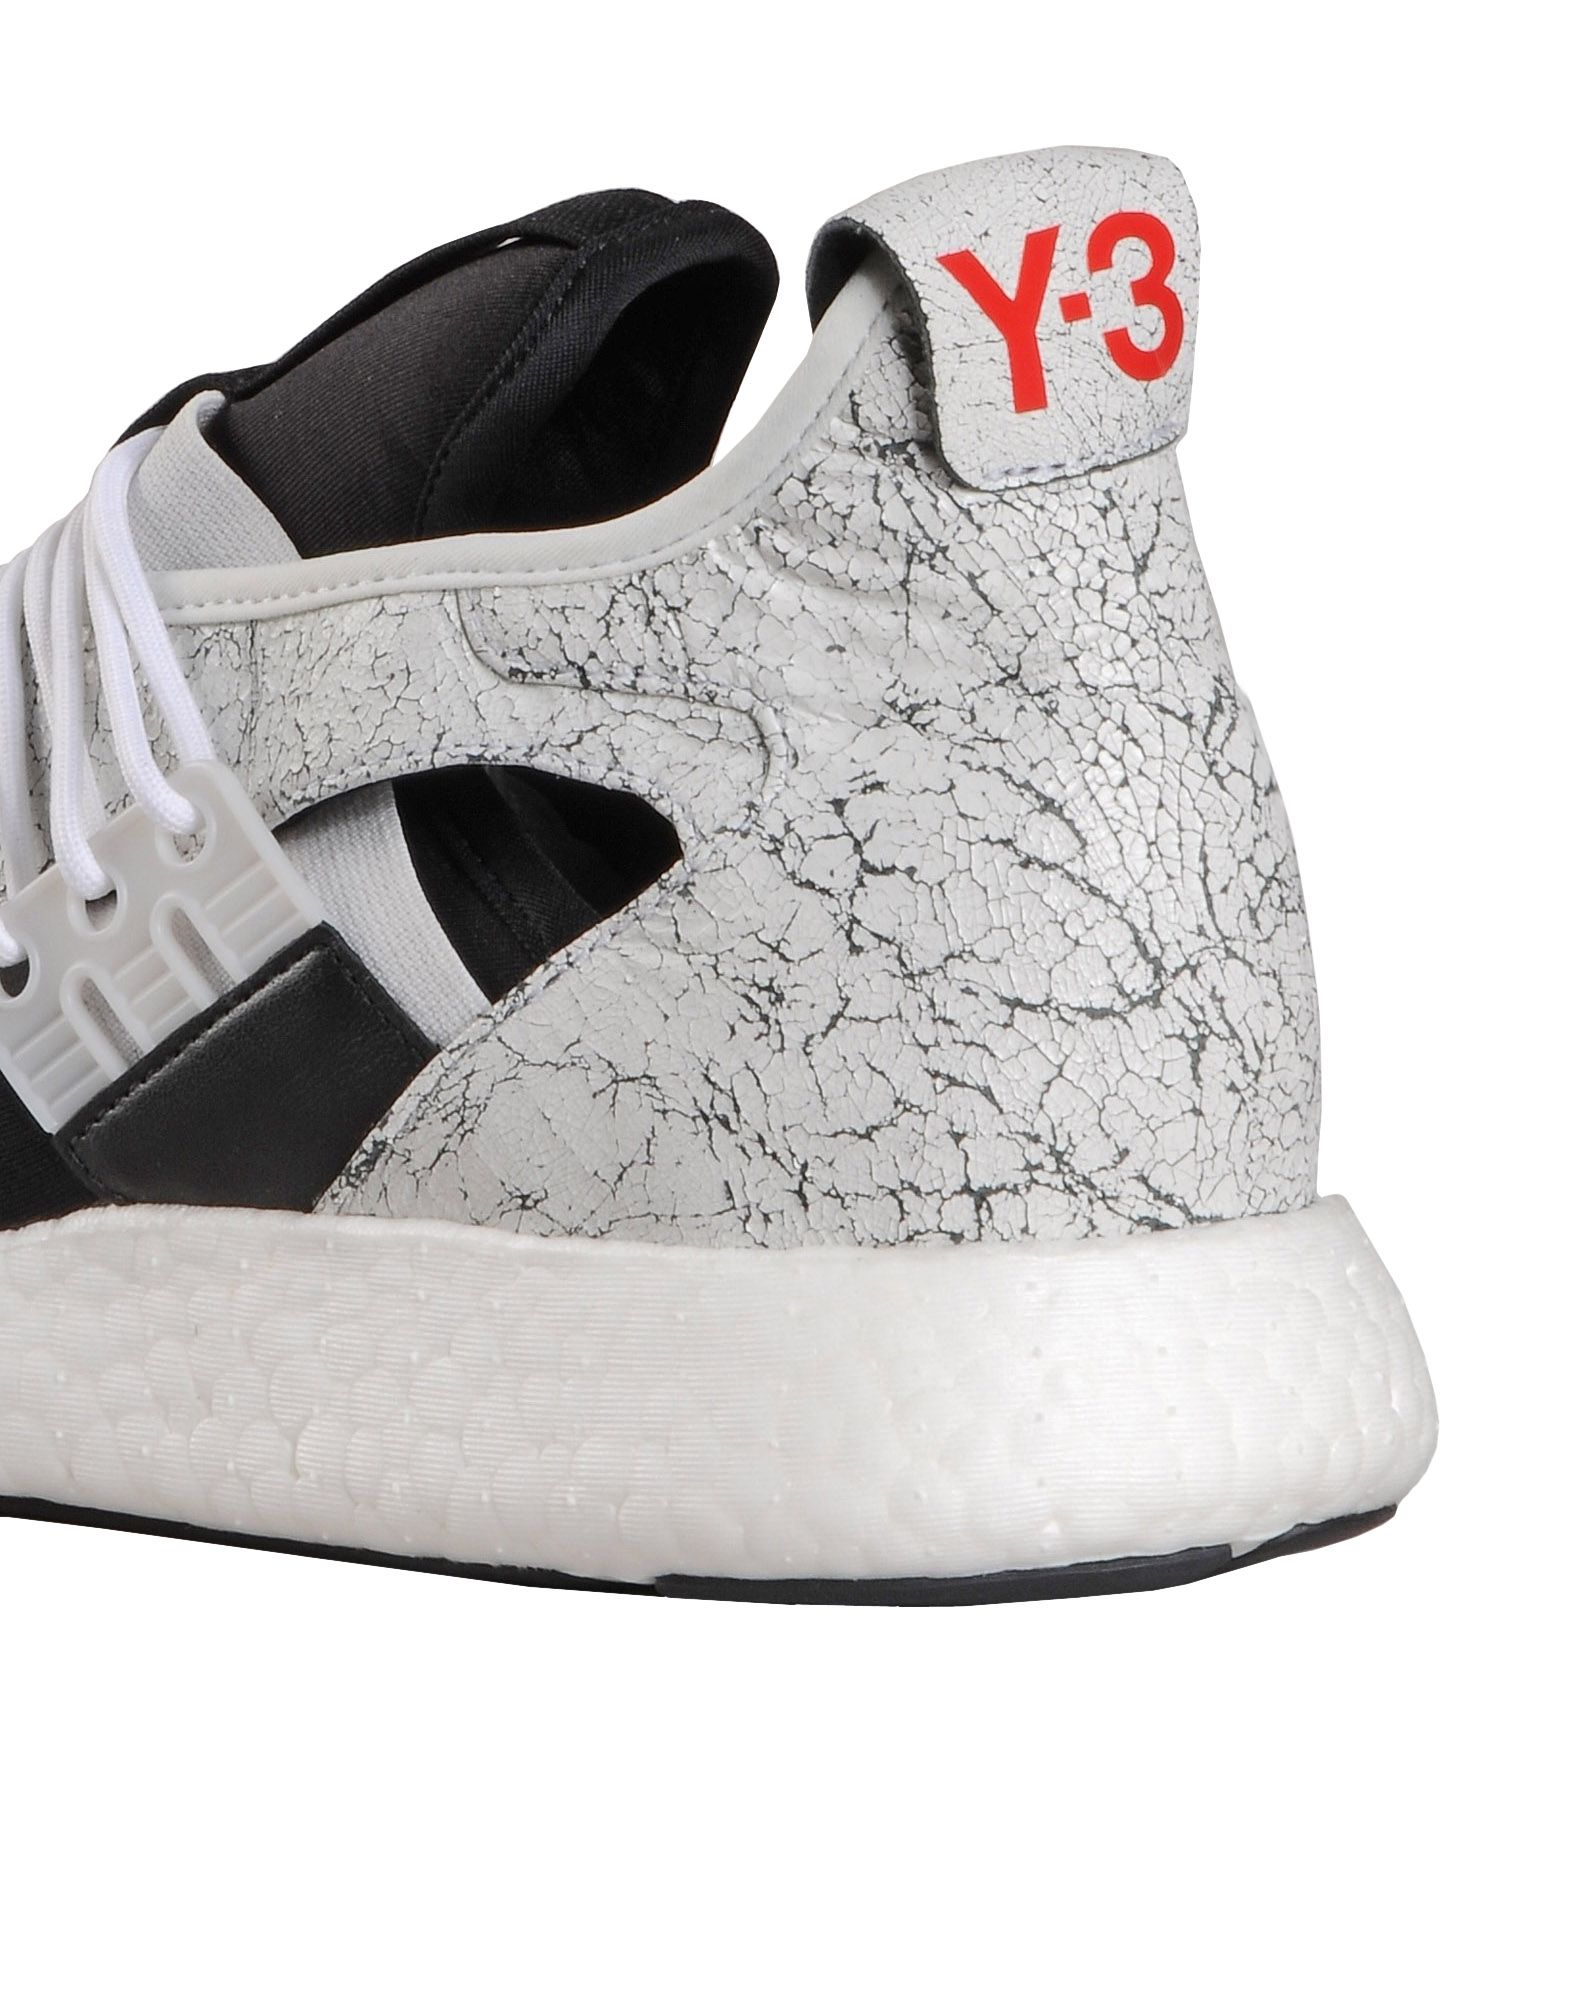 Y 3 ELLE RUN ‎ ‎Sneakers‎ ‎ ‎ | Adidas Y-3 Offizielle Webseite